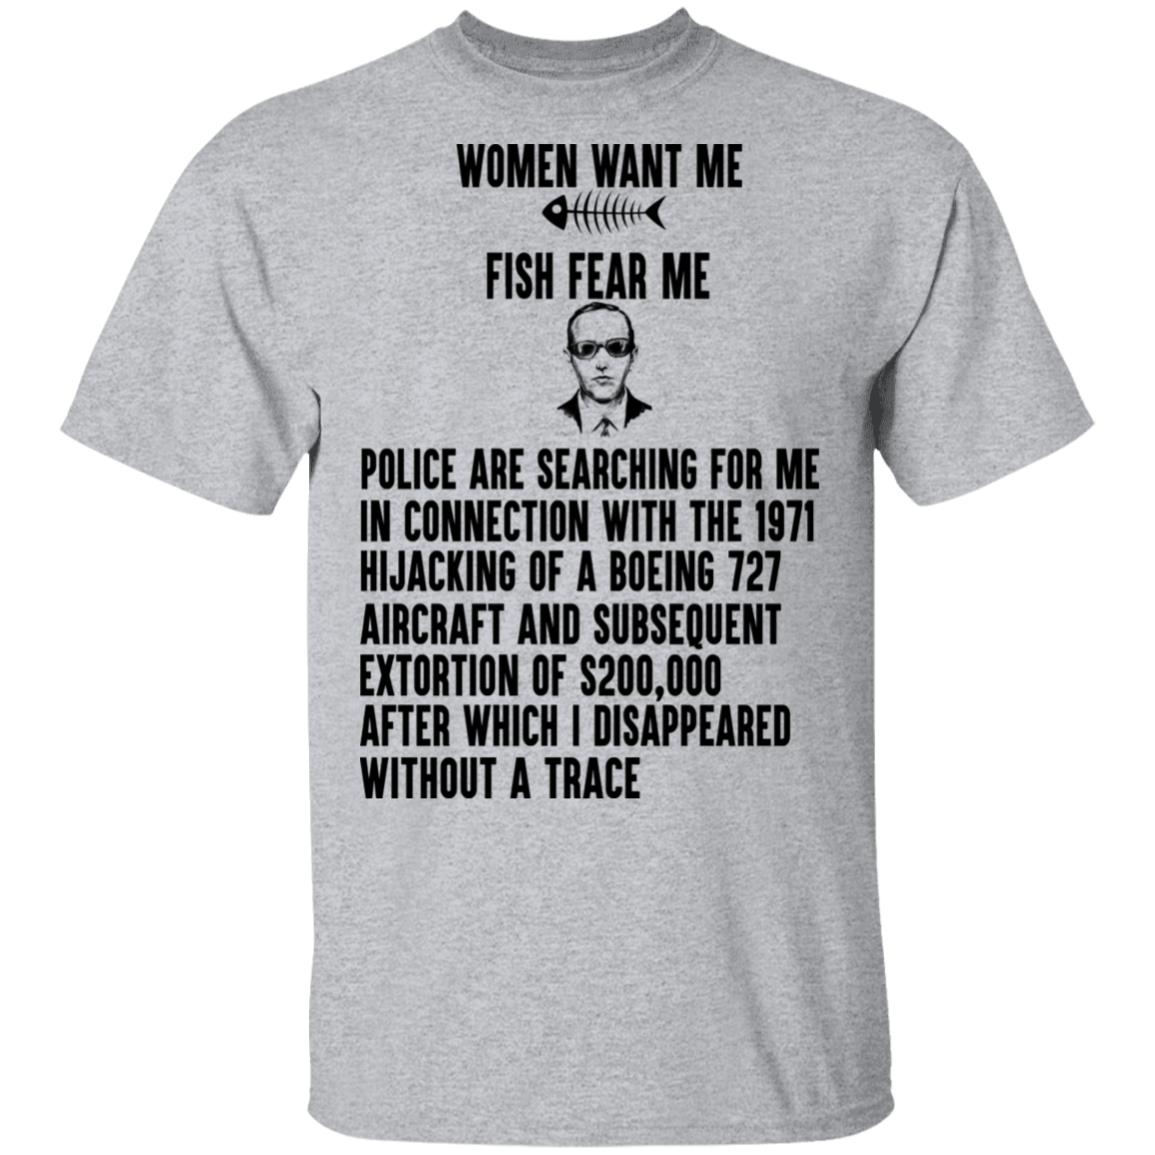 Women Want me, Fish Fear Me, Fishing Shirt, Fathers Day Gift